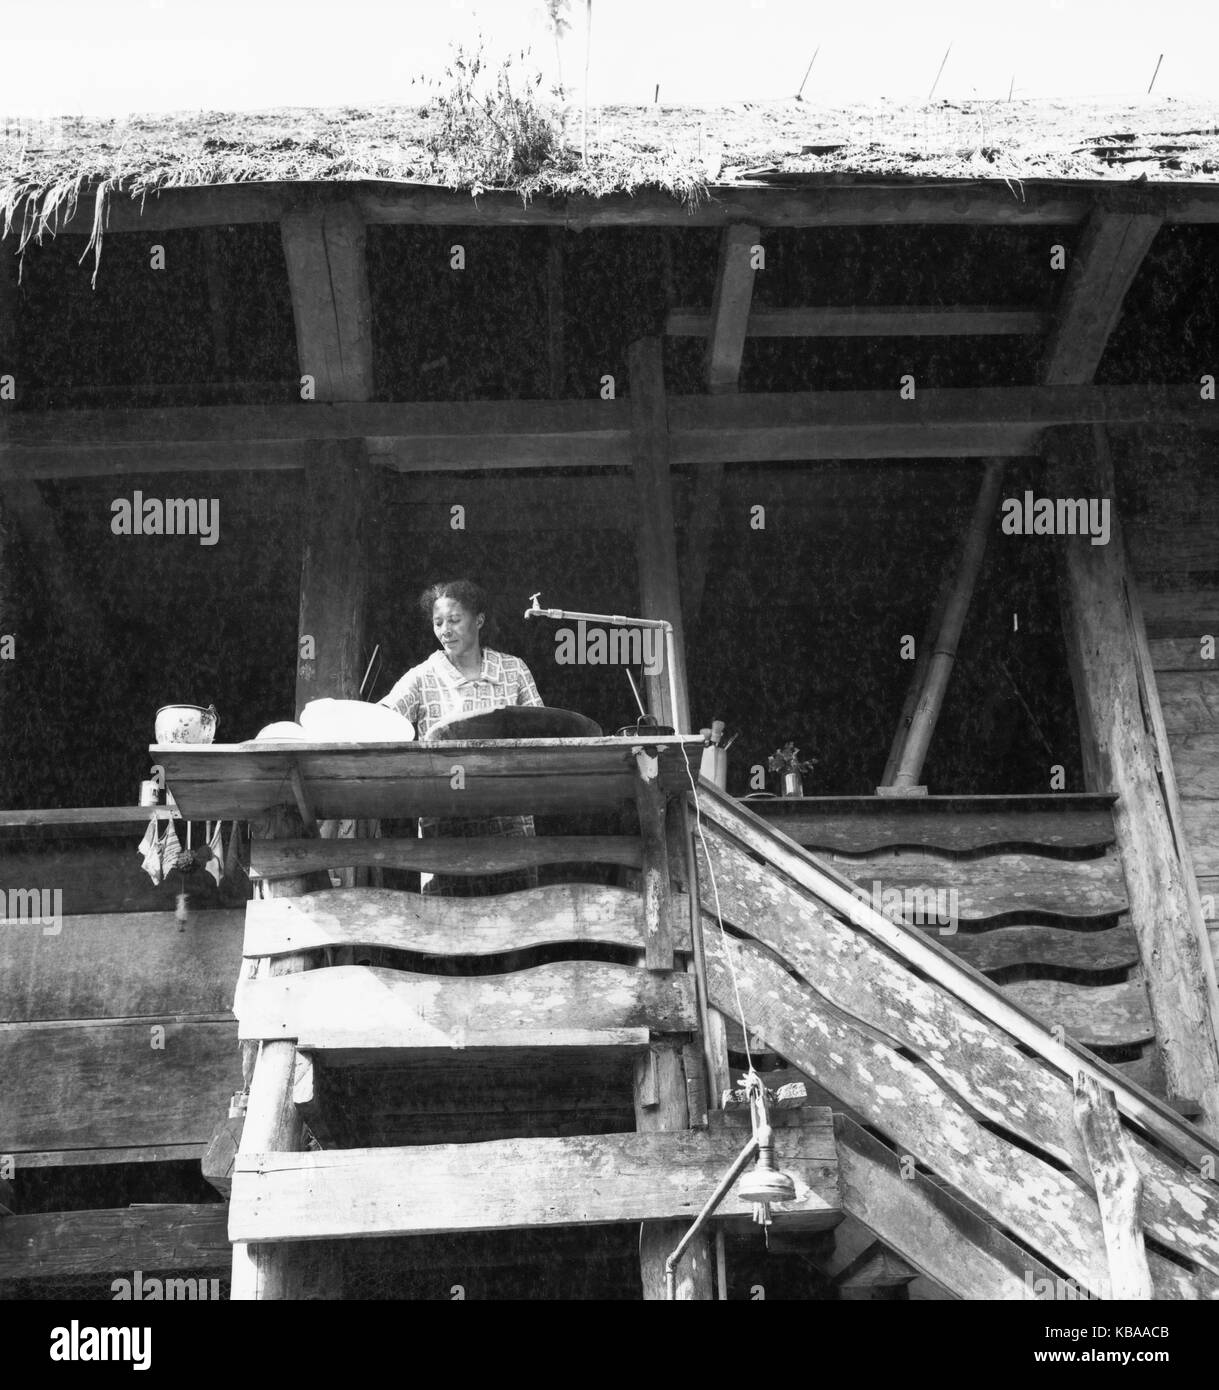 Zu Besuch beim Einsiedler und Goldwäscher Don Jorge am Rio Napo, Ecuador 1960er Jahre. A visit at hermit and gold panner Don Jorge at Rio Napo, Ecuador 1960s. Stock Photo